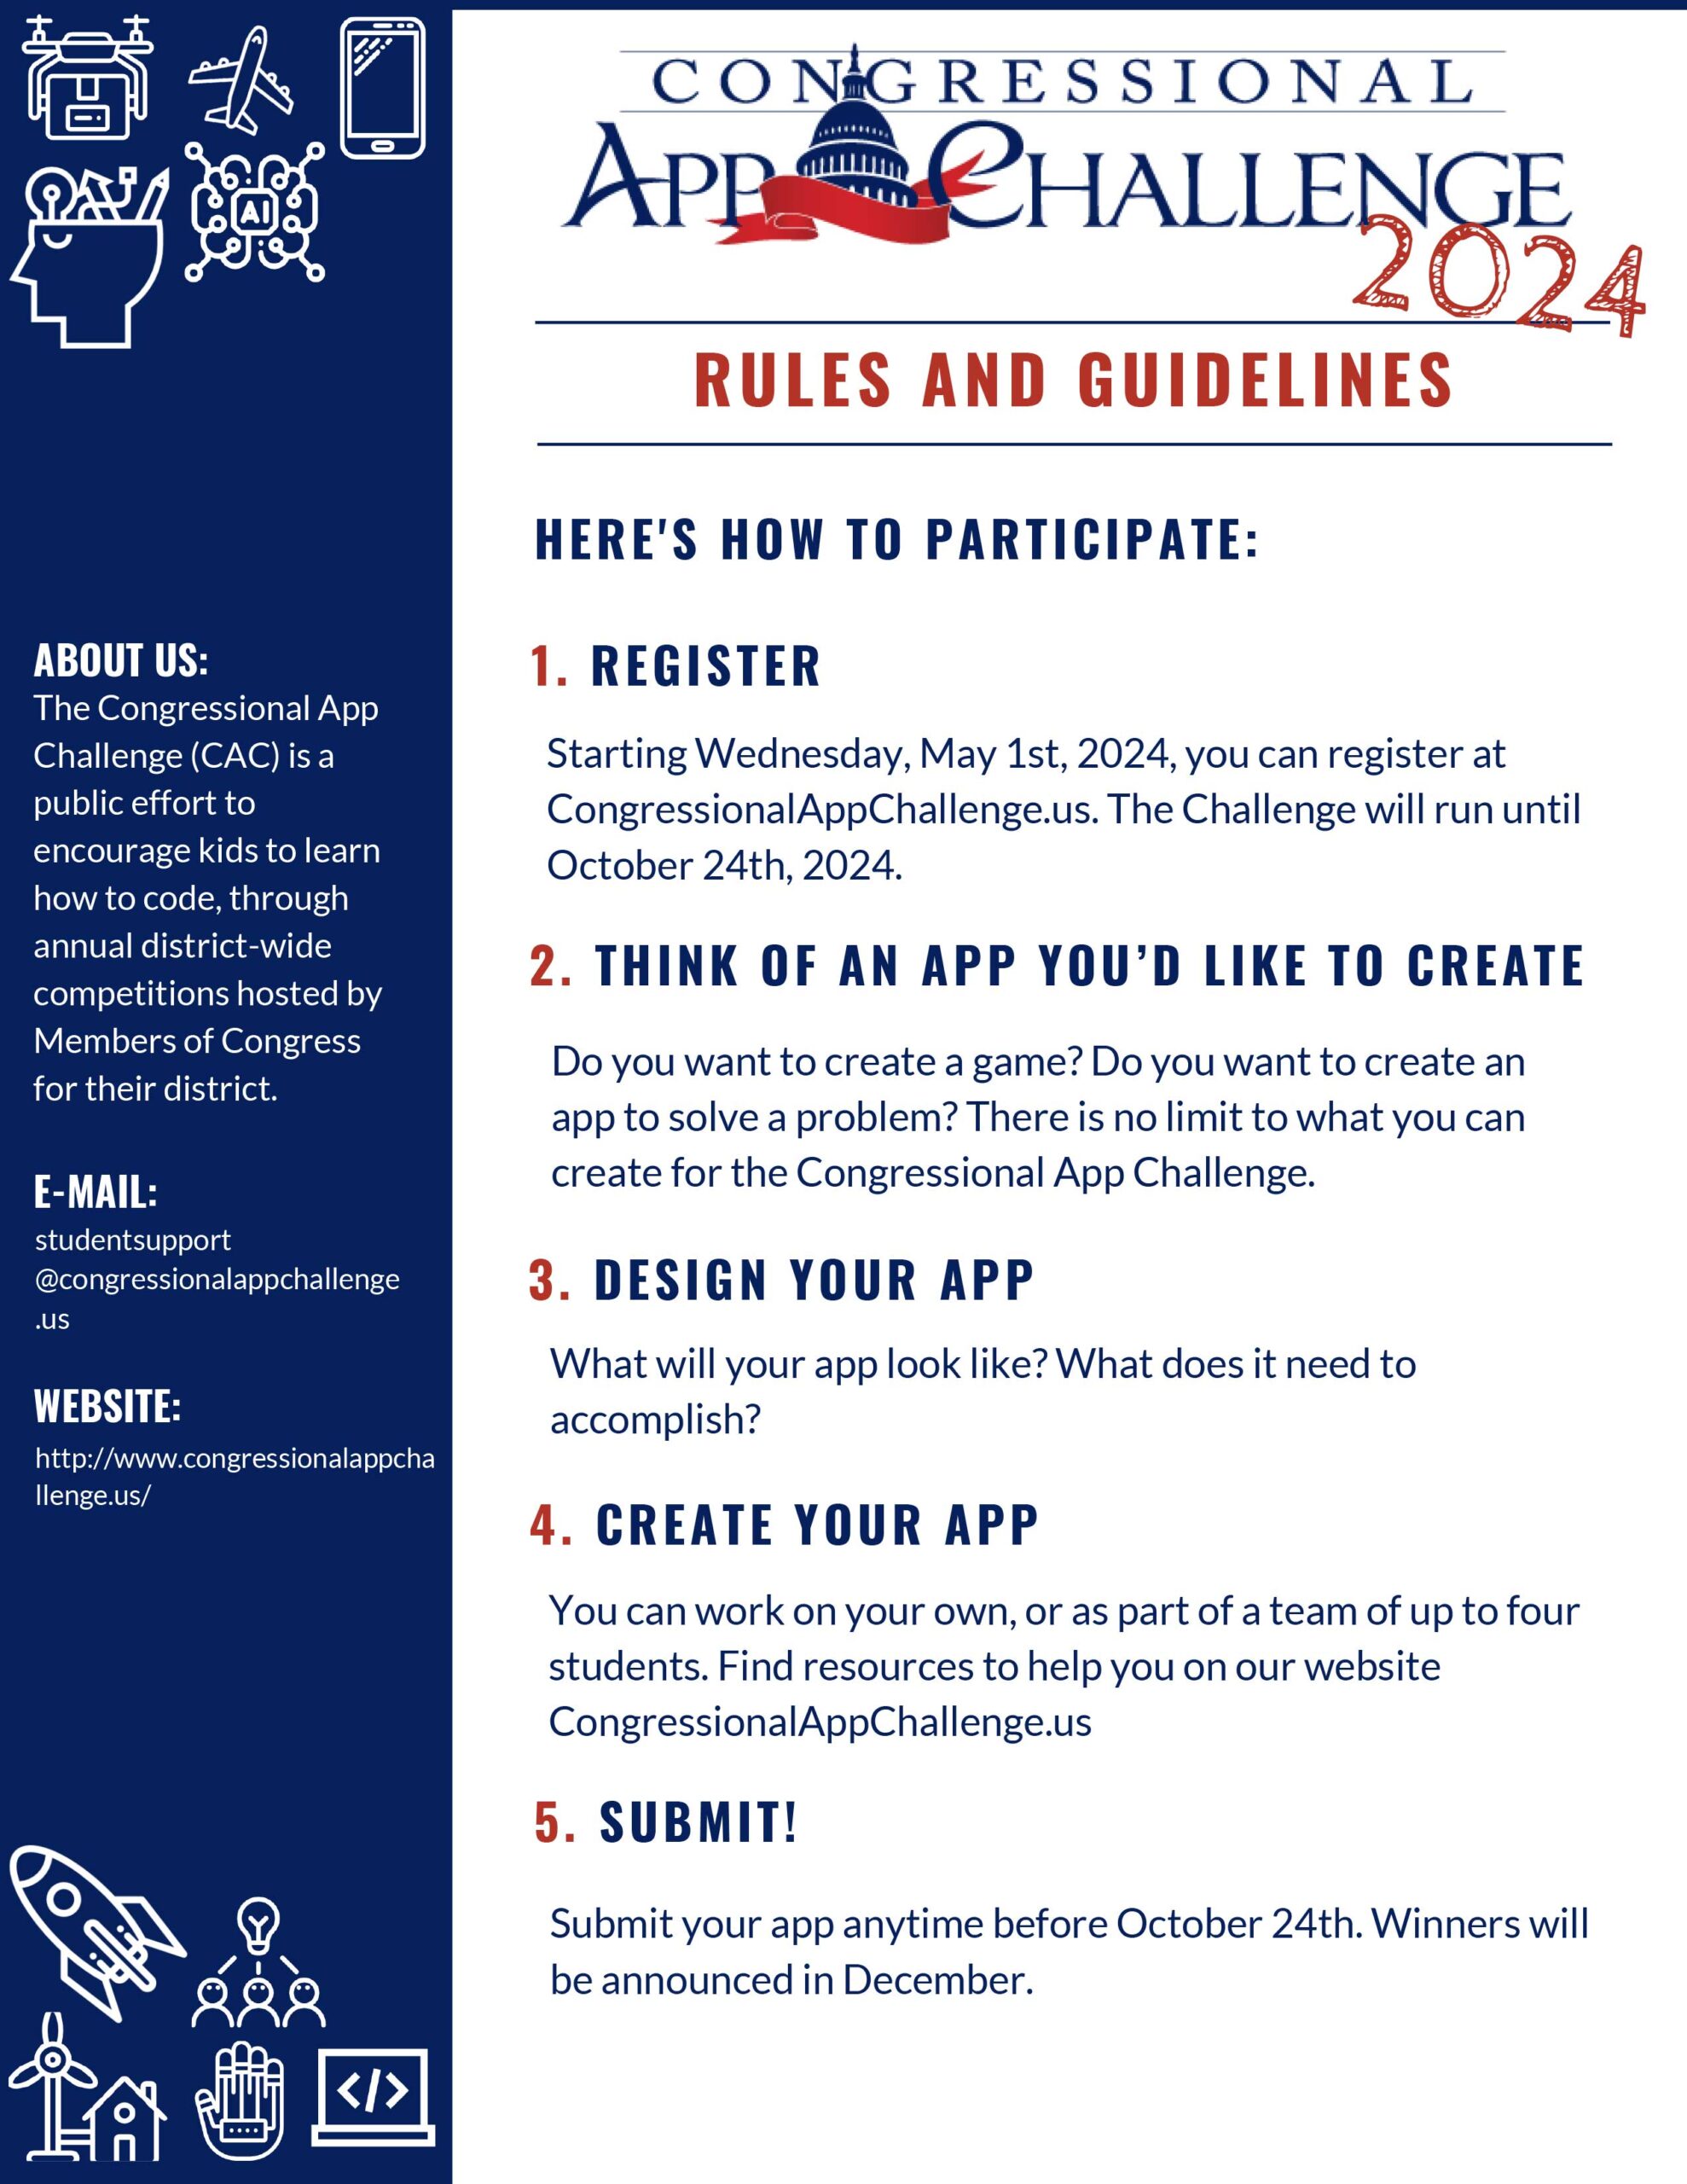 Congress App Challenge 2024 info flyer 